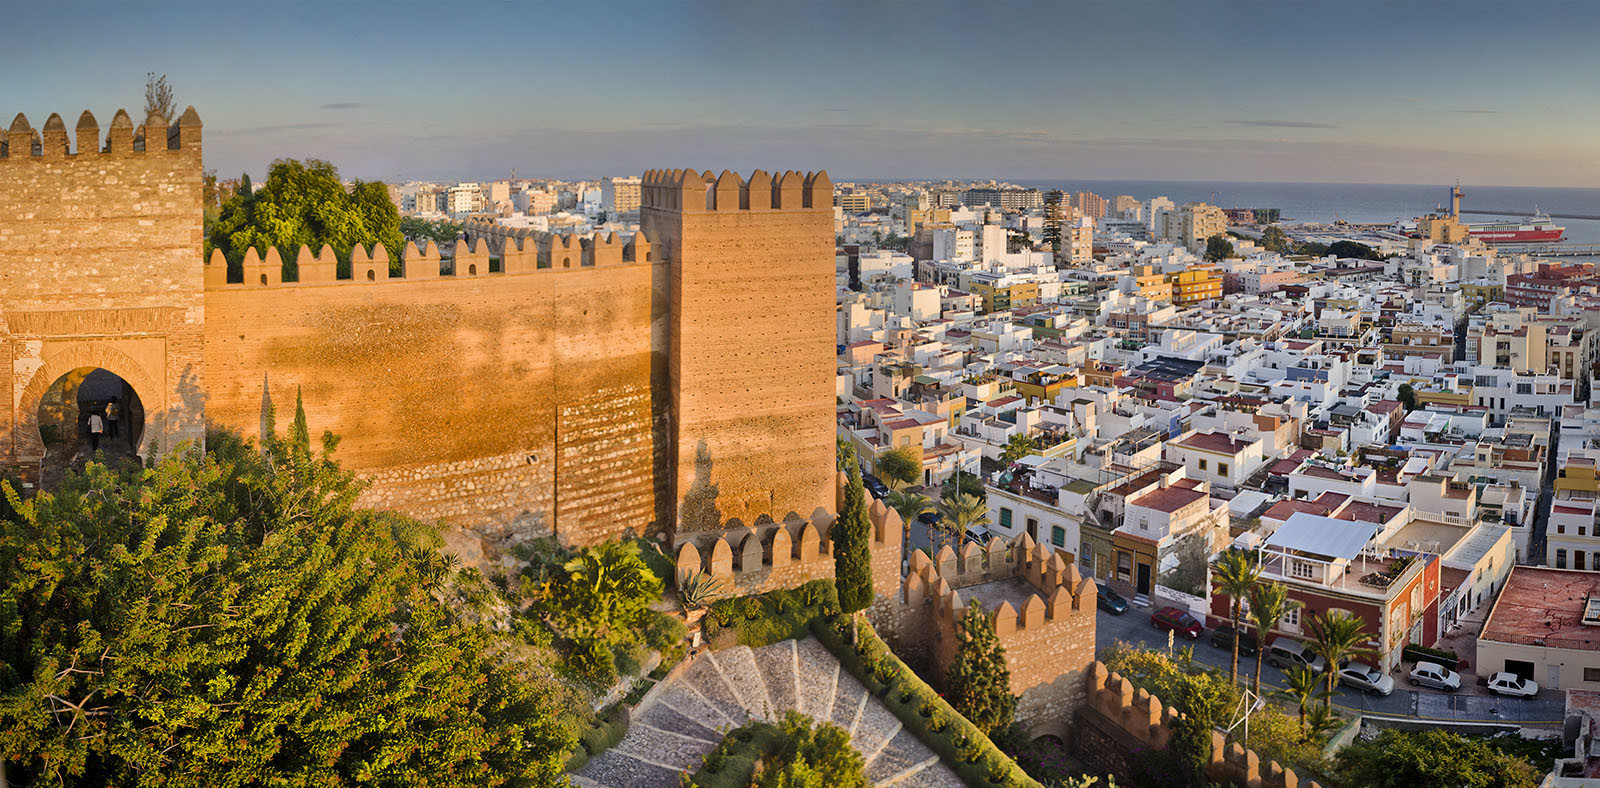  Almeria, İspanya.